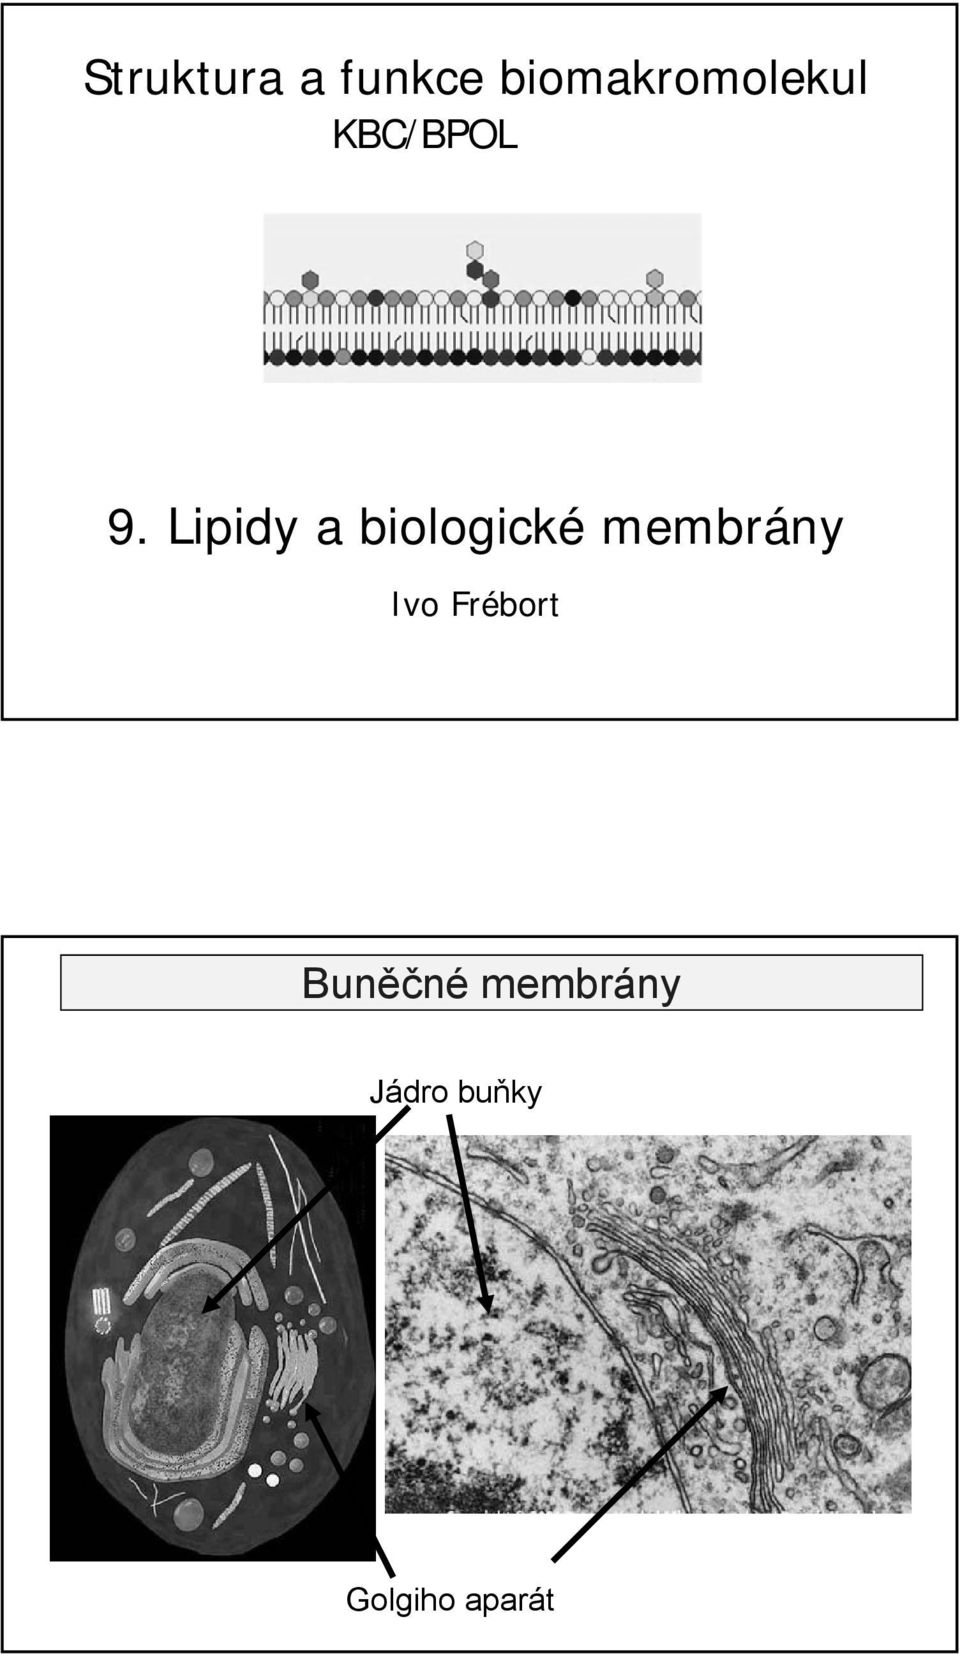 Lipidy a biologické membrány Ivo